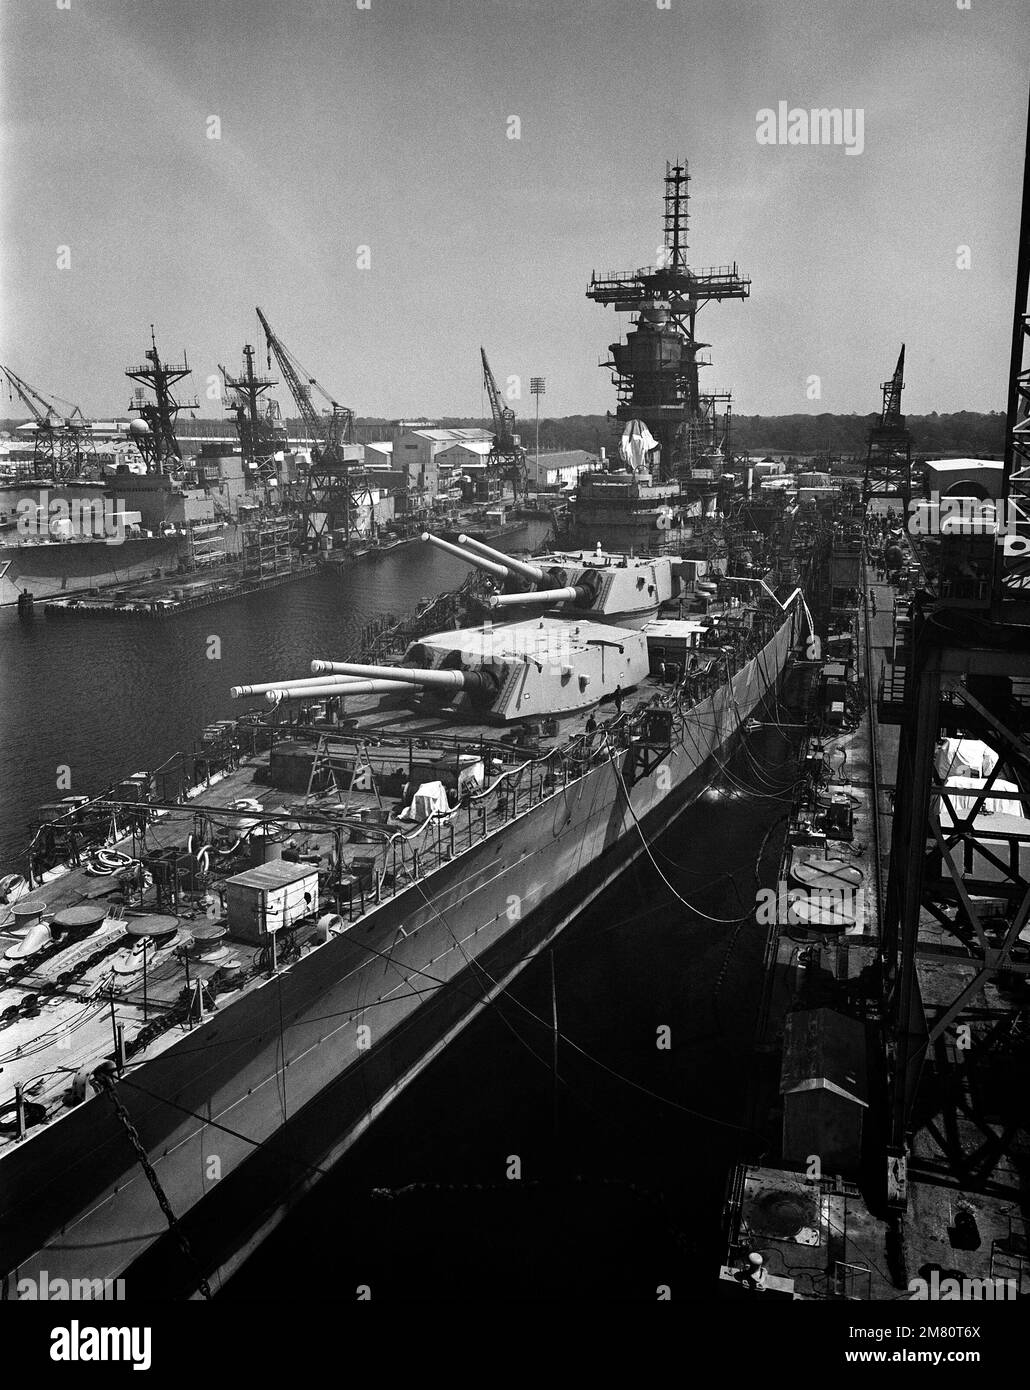 Una vista elevata dell'arco portuale della nave da guerra USS IOWA (BB 61) in fase di ristrutturazione/ammodernamento presso il cantiere navale Litton/Ingalls. Base: Pascagoula Stato: Mississippi (MS) Paese: Stati Uniti d'America (USA) Foto Stock